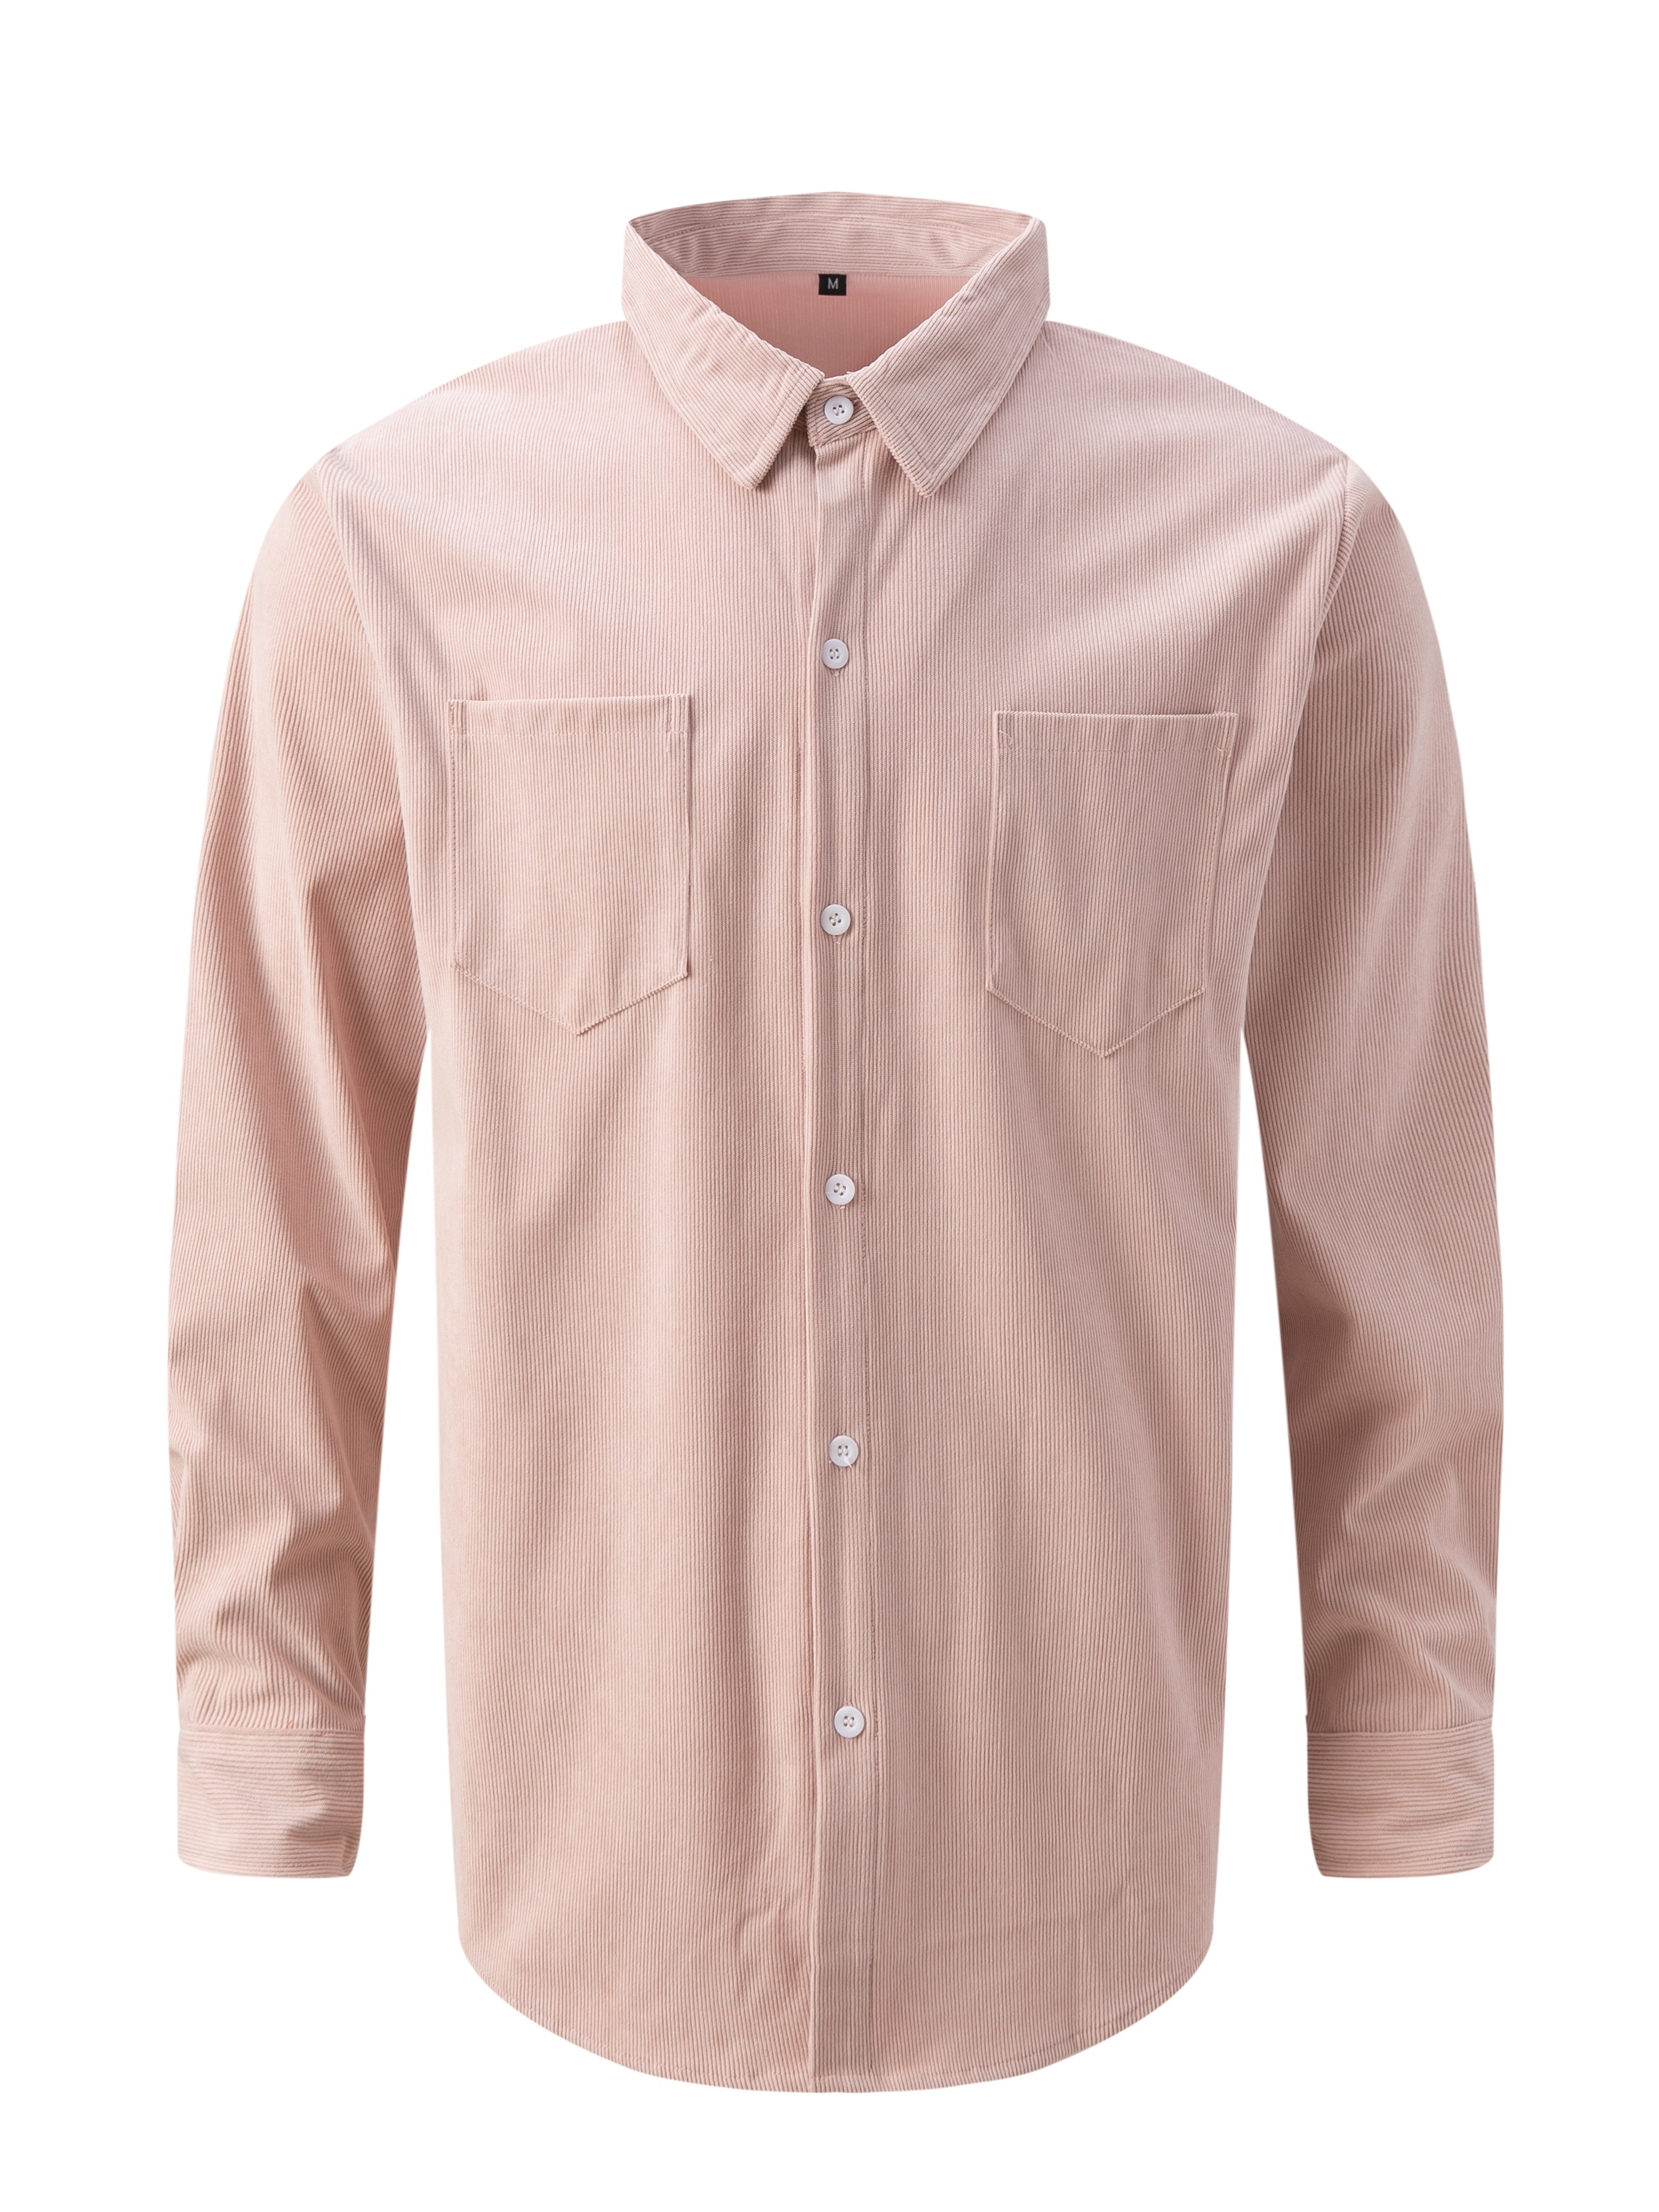 Aueoeo Mens Dress Shirts, Men's Cotton Linen Shirt Long Sleeve Collar  Button Pocket Casual Flower Shirt Tops Turndown Collar Blouse 